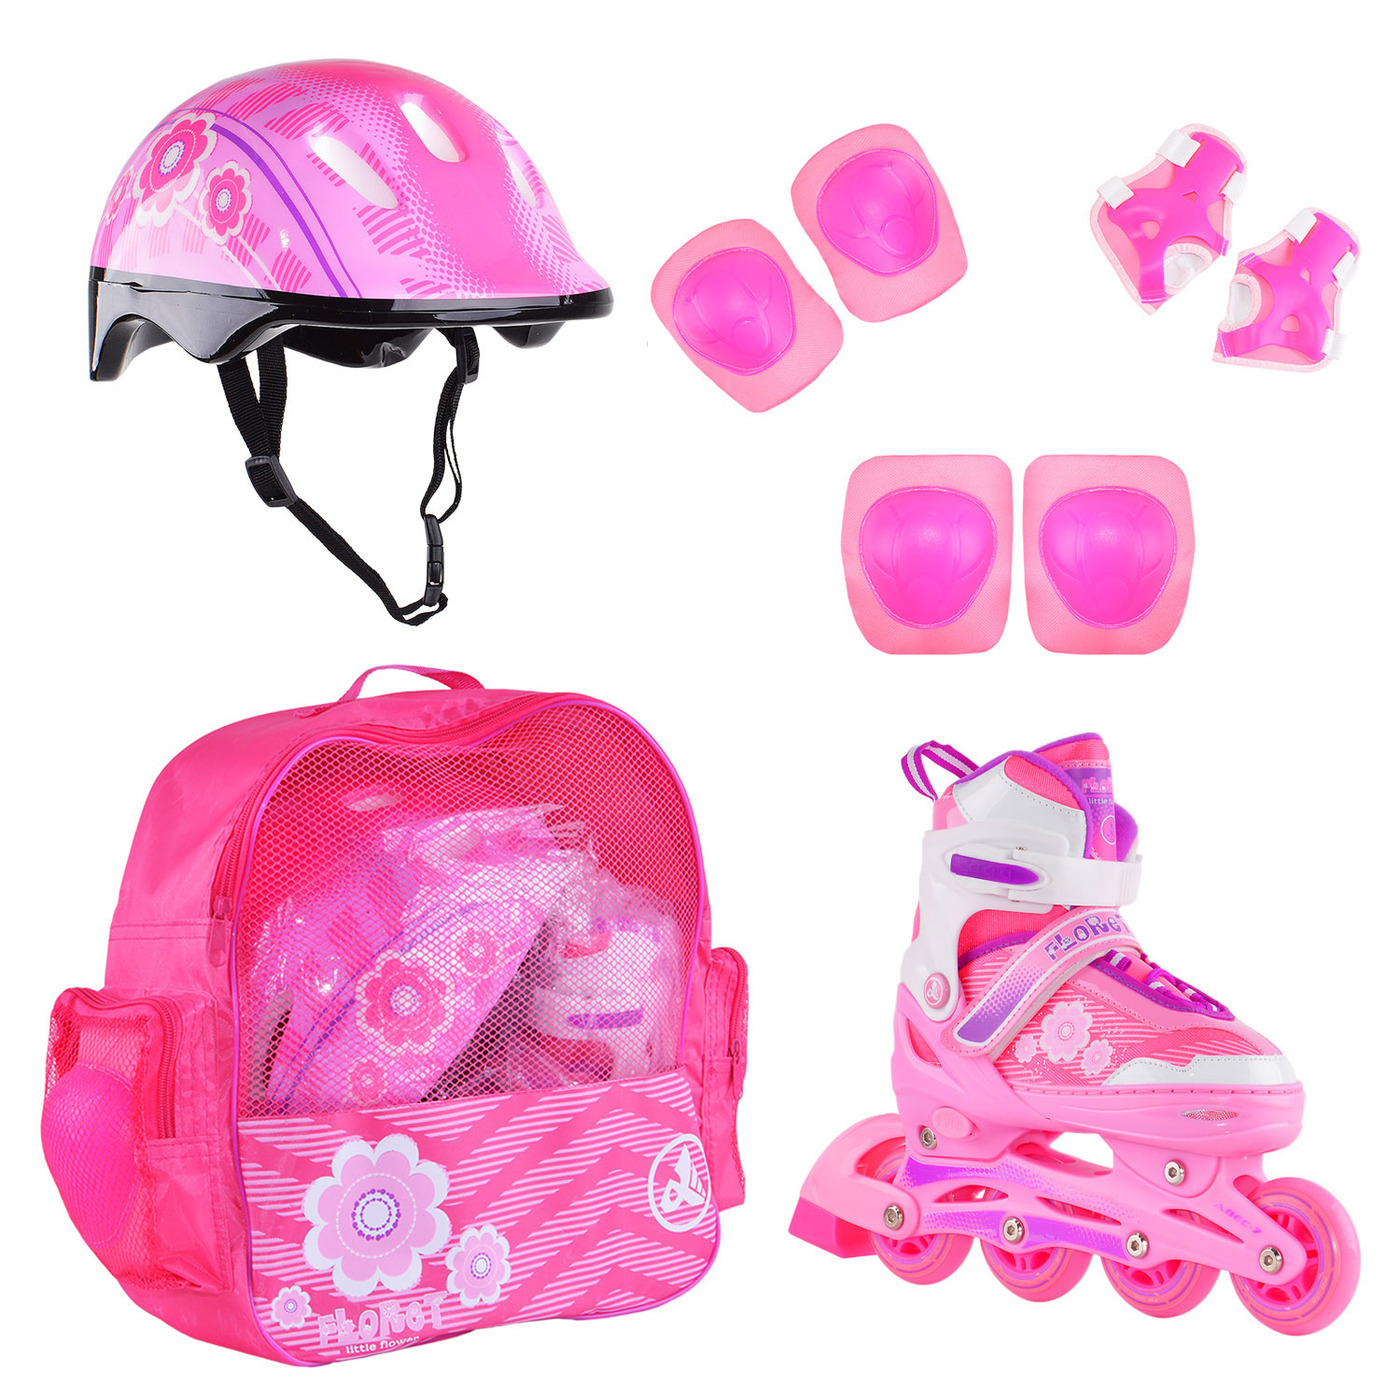 Раздвижные роликовые коньки Alpha Caprice FLORET Wh/Pink/Viol шлем, защита, сумка M:35-38 раздвижные роликовые коньки alpha caprice soul pink